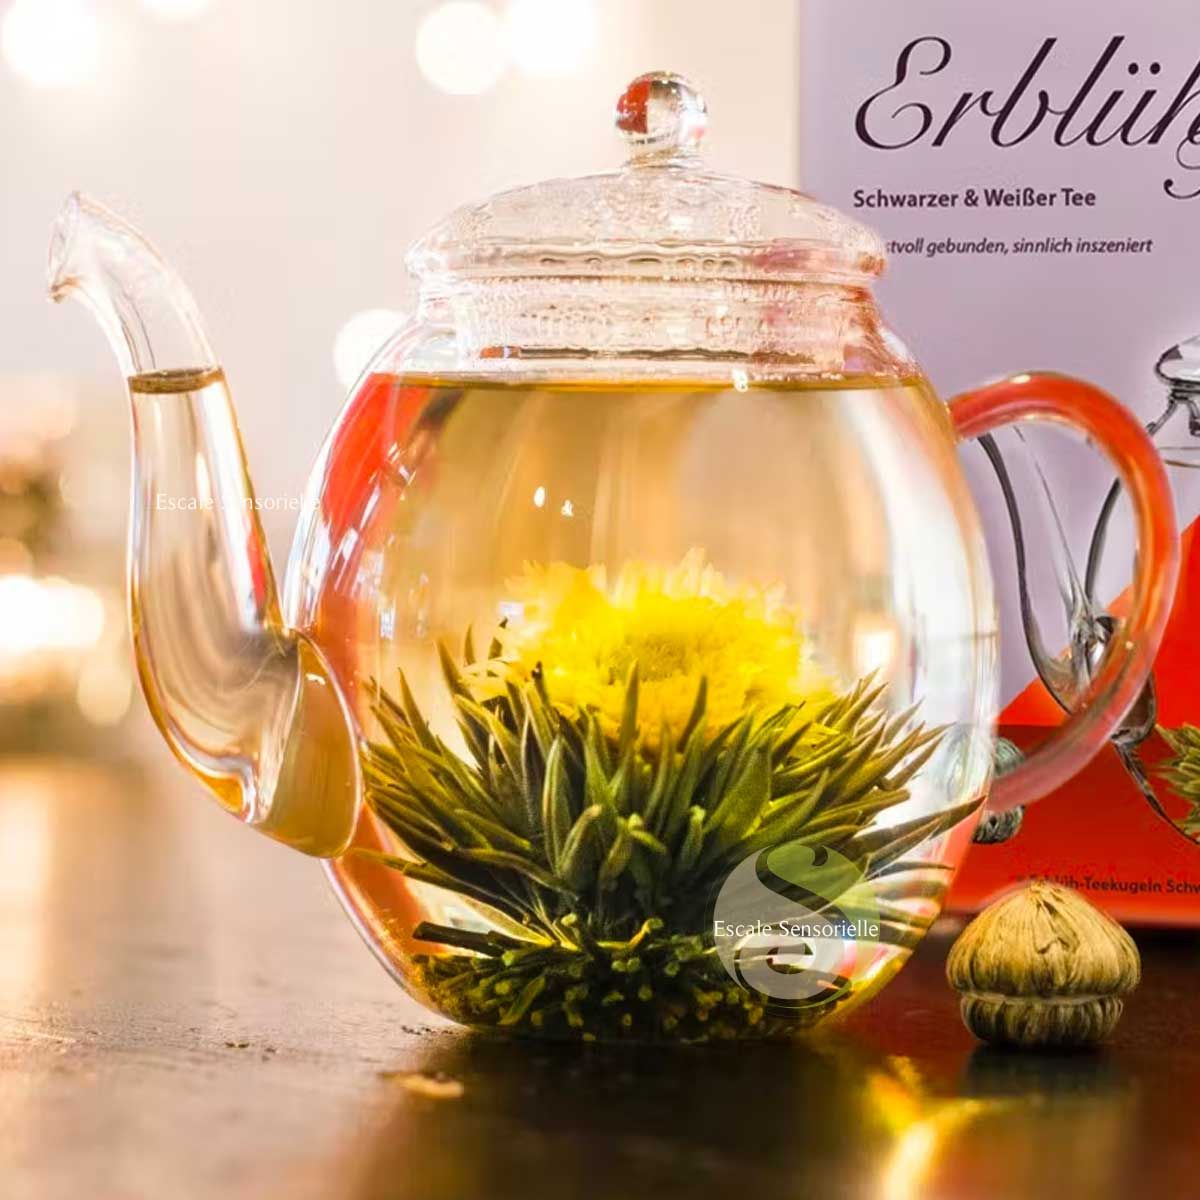 Comment préparer fleur de thé blanc coffret creano théière et fleurs de thé  - Escale Sensorielle